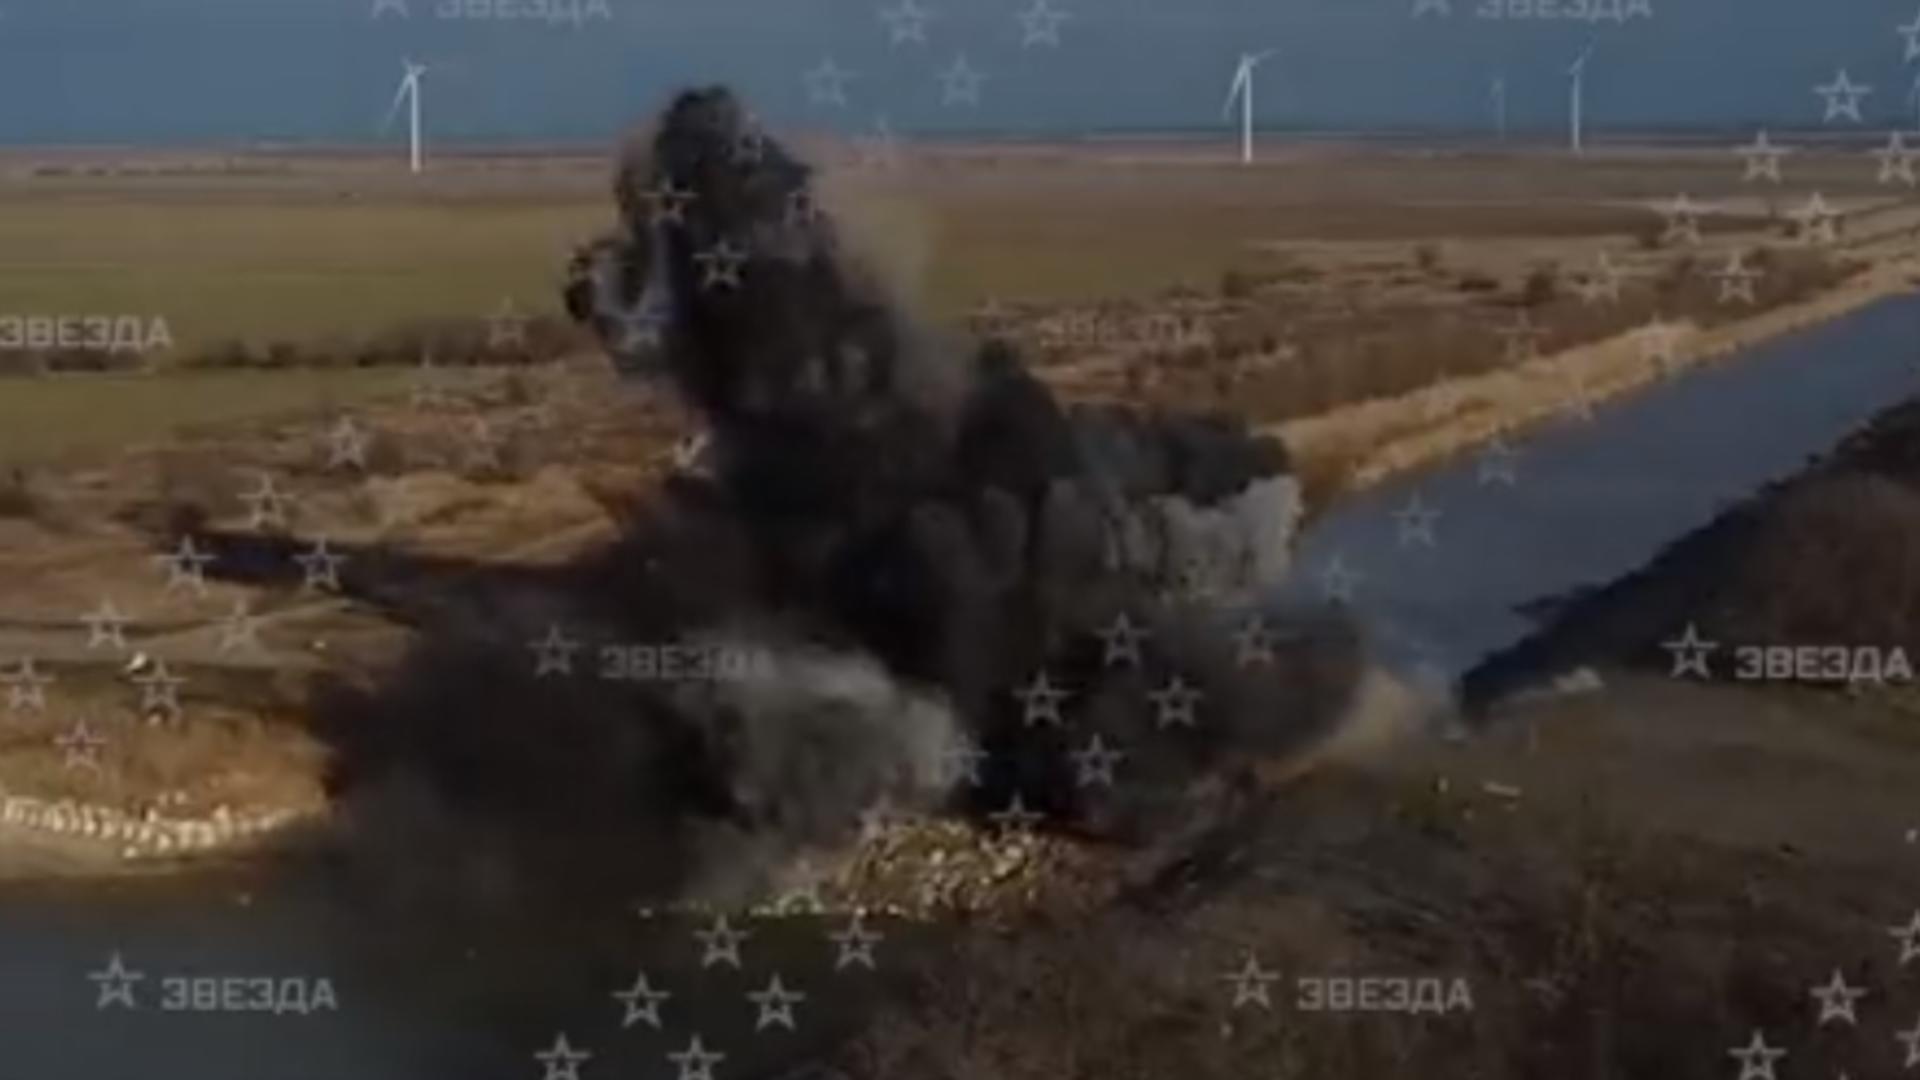  Explozii nordul Crimeei - imagine de arhivă